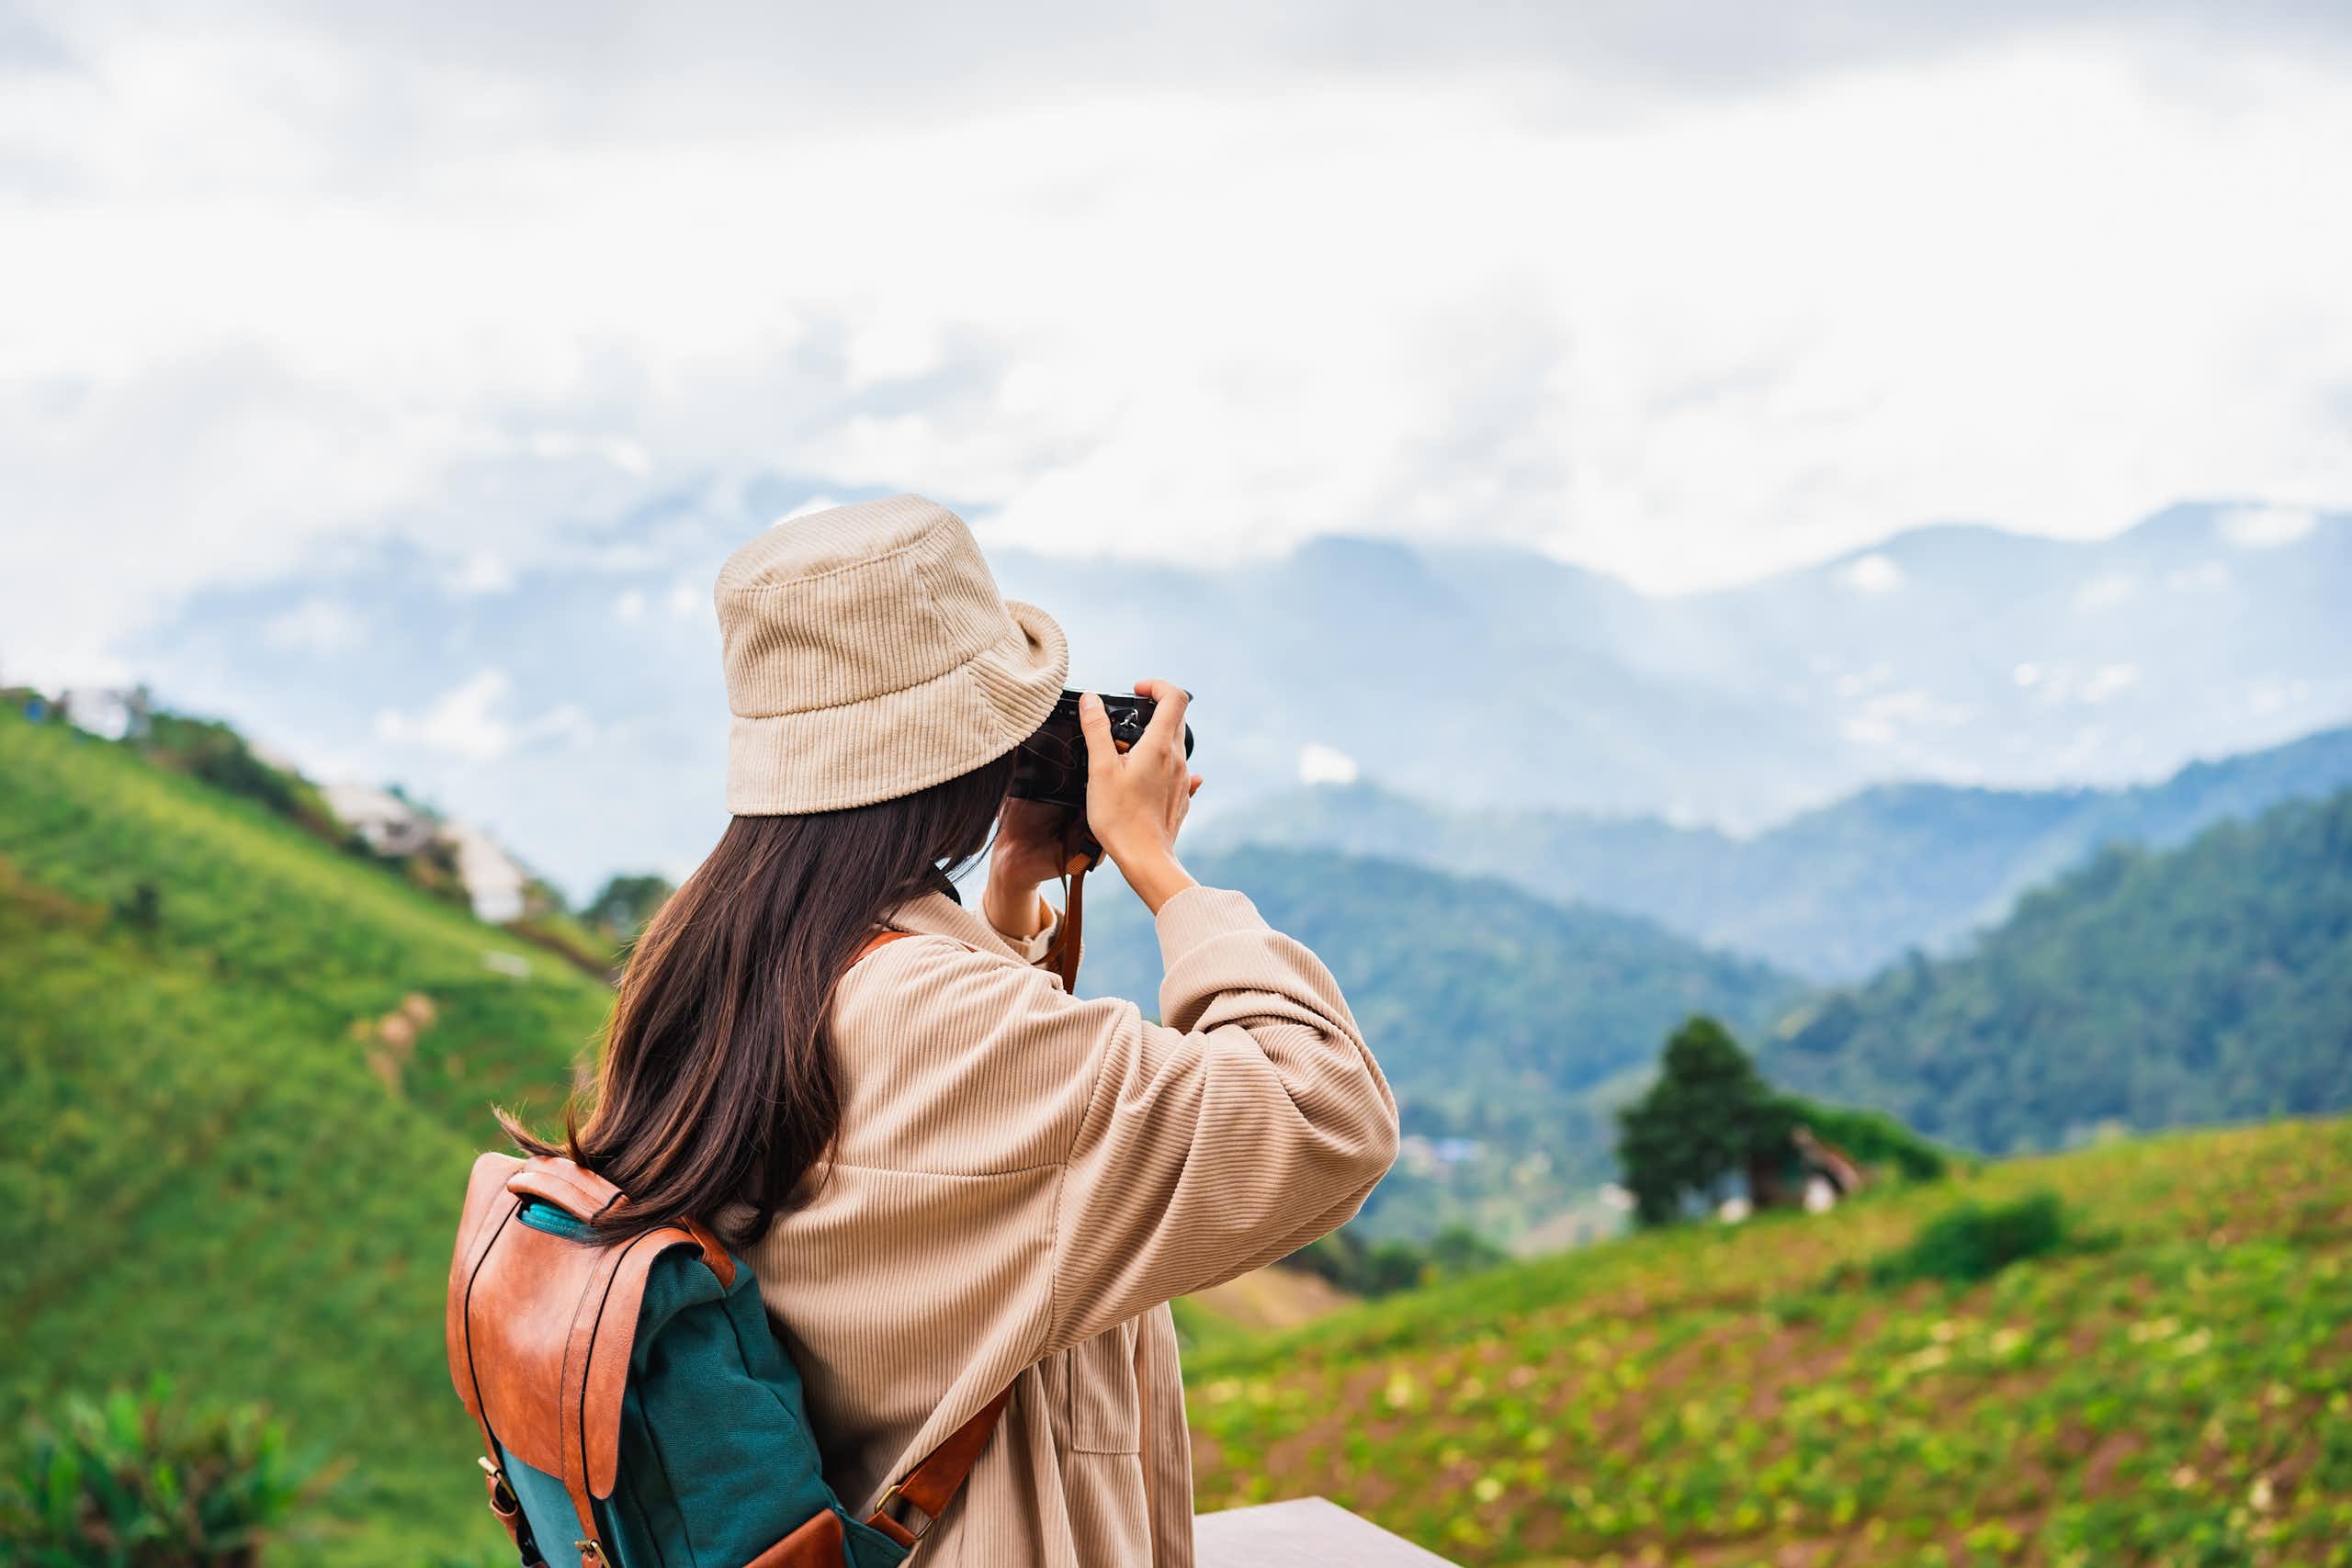 Riset jelaskan cara mengatasi risiko yang dihadapi perempuan saat lakukan perjalanan solo